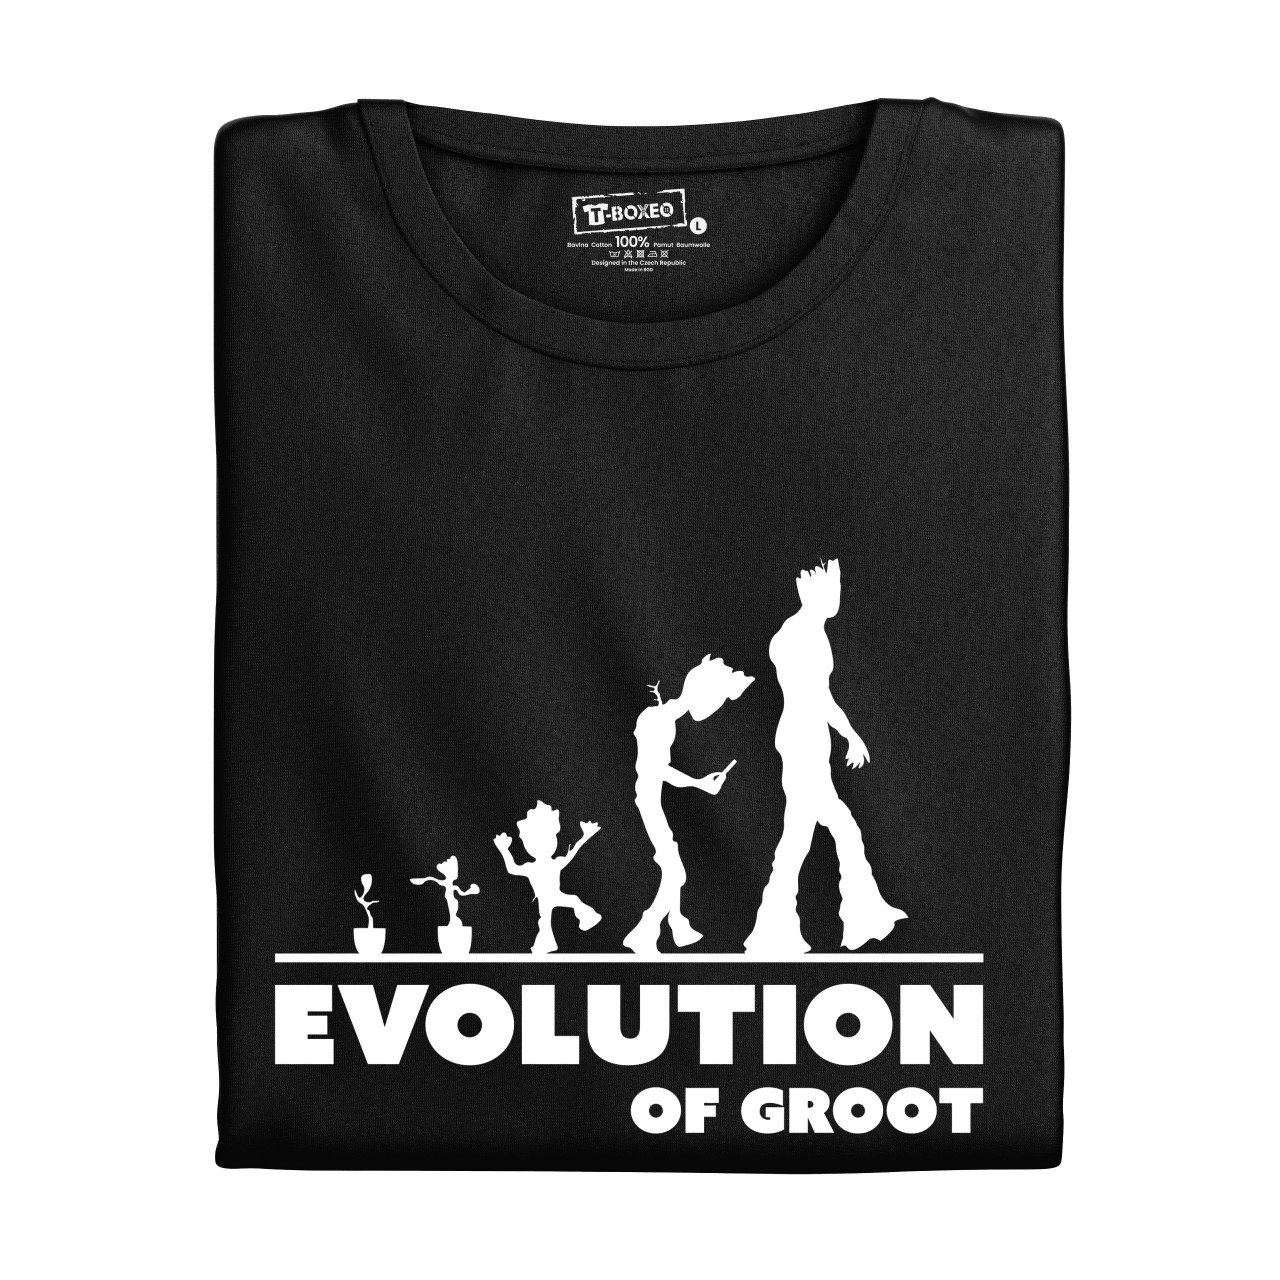 Pánské tričko s potiskem "Evoluce Fanouška Marvelu"